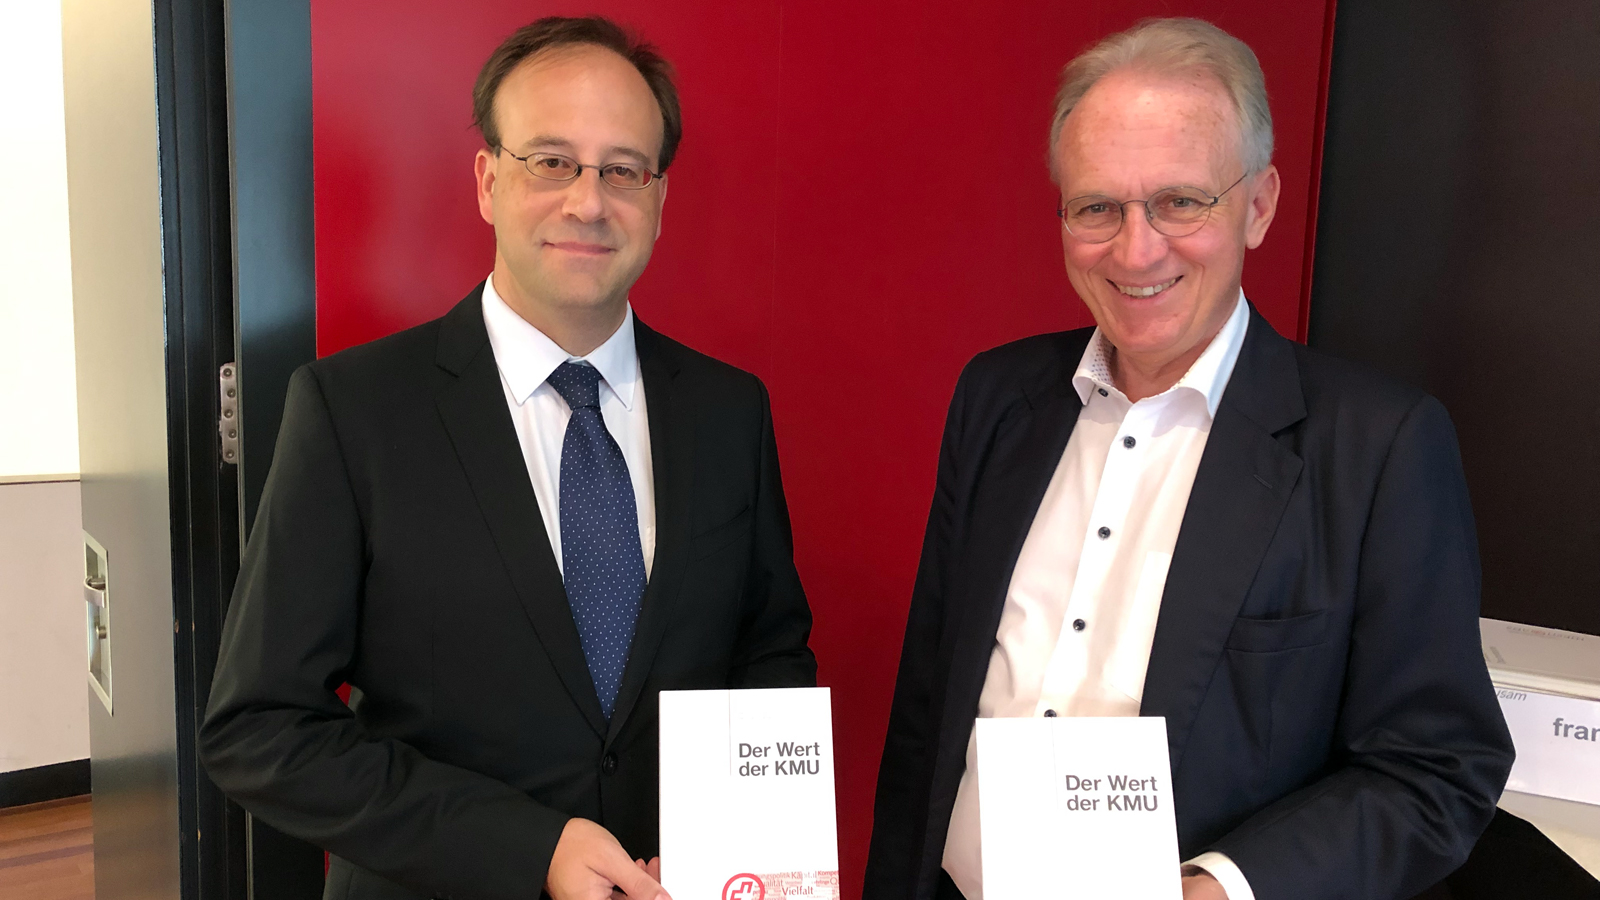 Les auteurs de l’ouvrage «Der Wert der KMU»: Henrique Schneider, professeur d’économie politique générale et directeur adjoint de l’usam ainsi qu’Hans-Ulrich Bigler, conseiller national et directeur de l’usam.